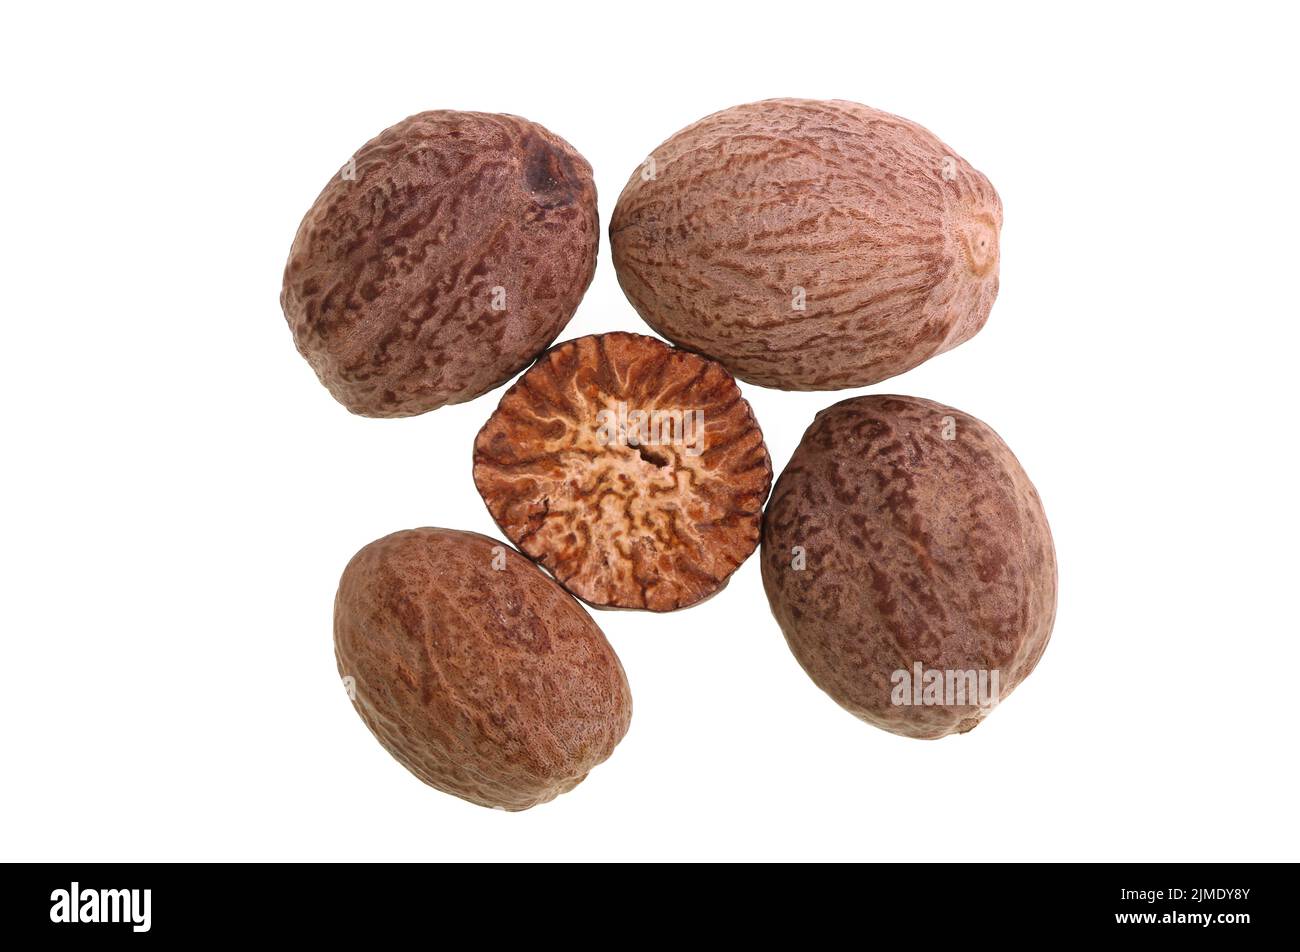 La noix de muscade est l'épice faite en meulant les grains de graines de l'arbre parfumé de noix de muscade, Myristica fragrans, et utilisé dans de nombreux plats salés et sucrés Banque D'Images